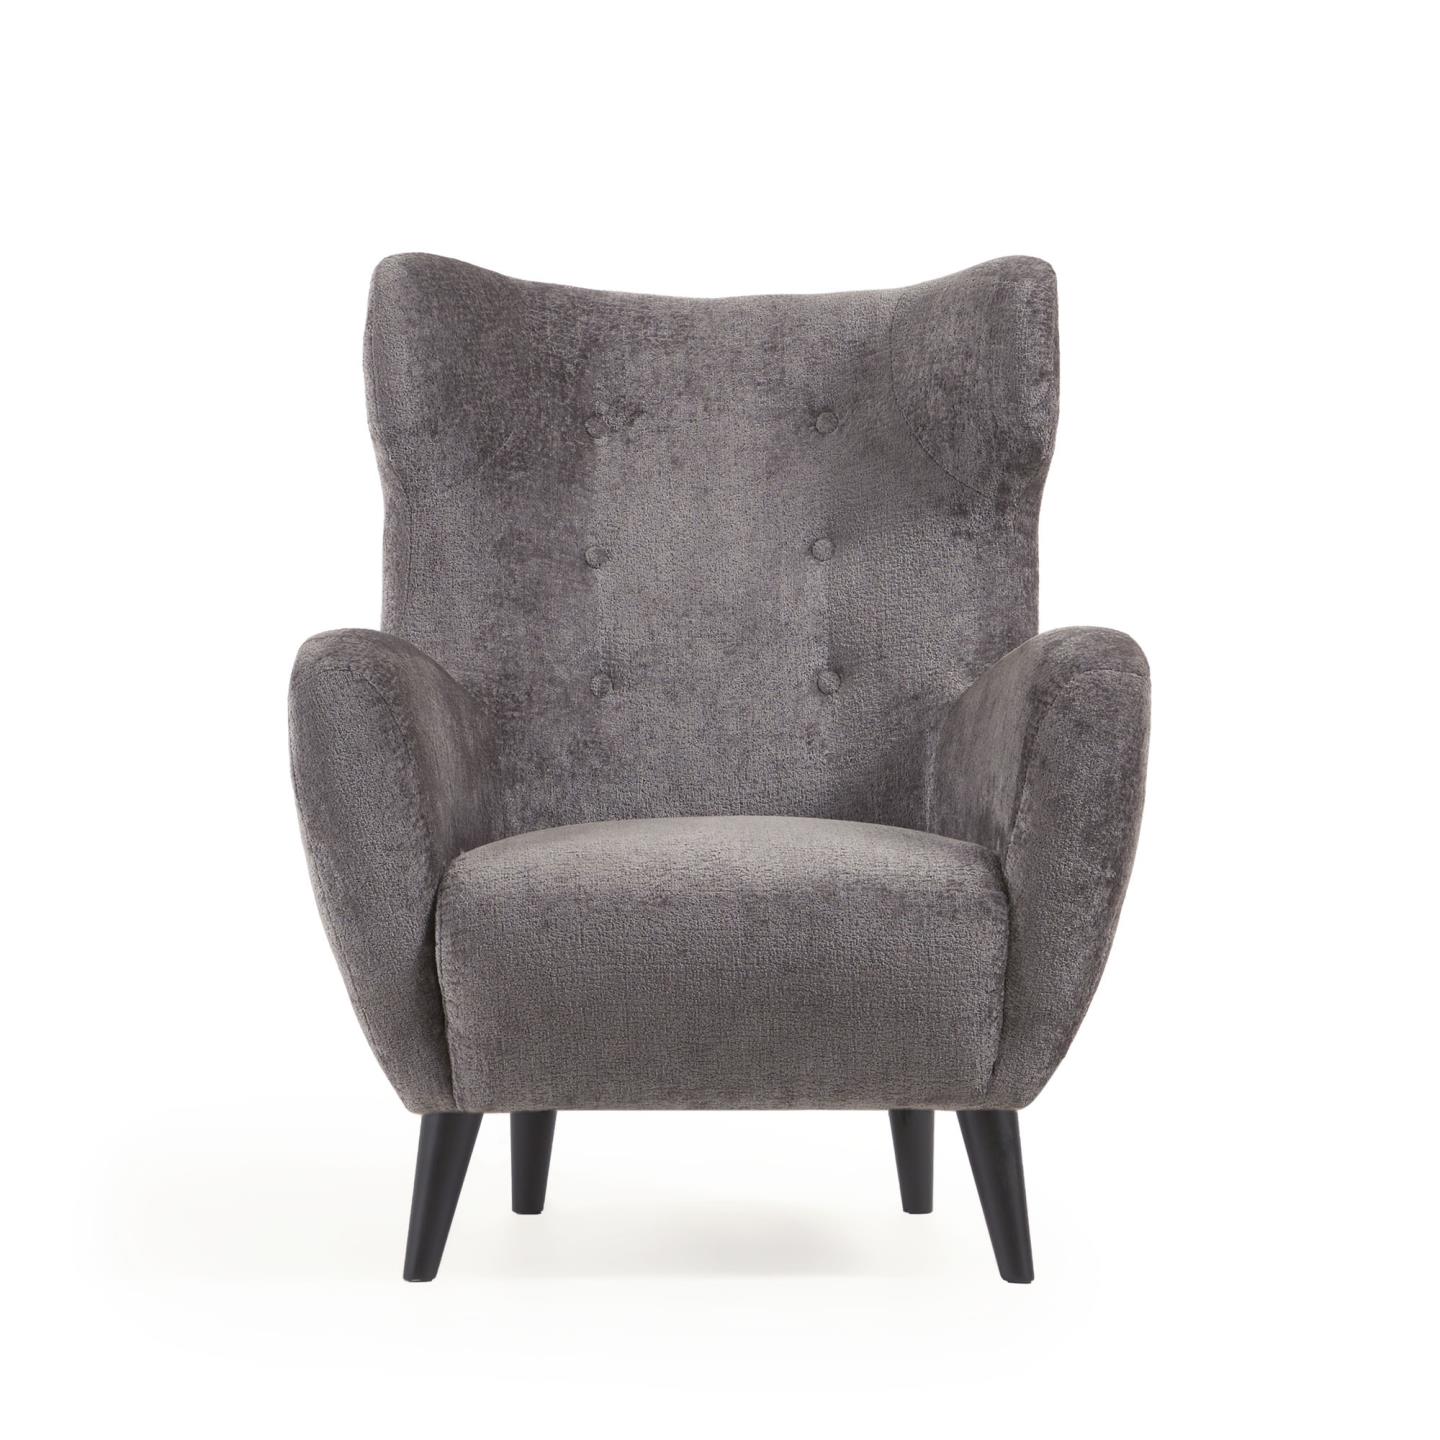 La Forma (ex Julia Grup) Кресло Passo из ткани букле серого цвета с ножками из массива натурального дуба черного цвета